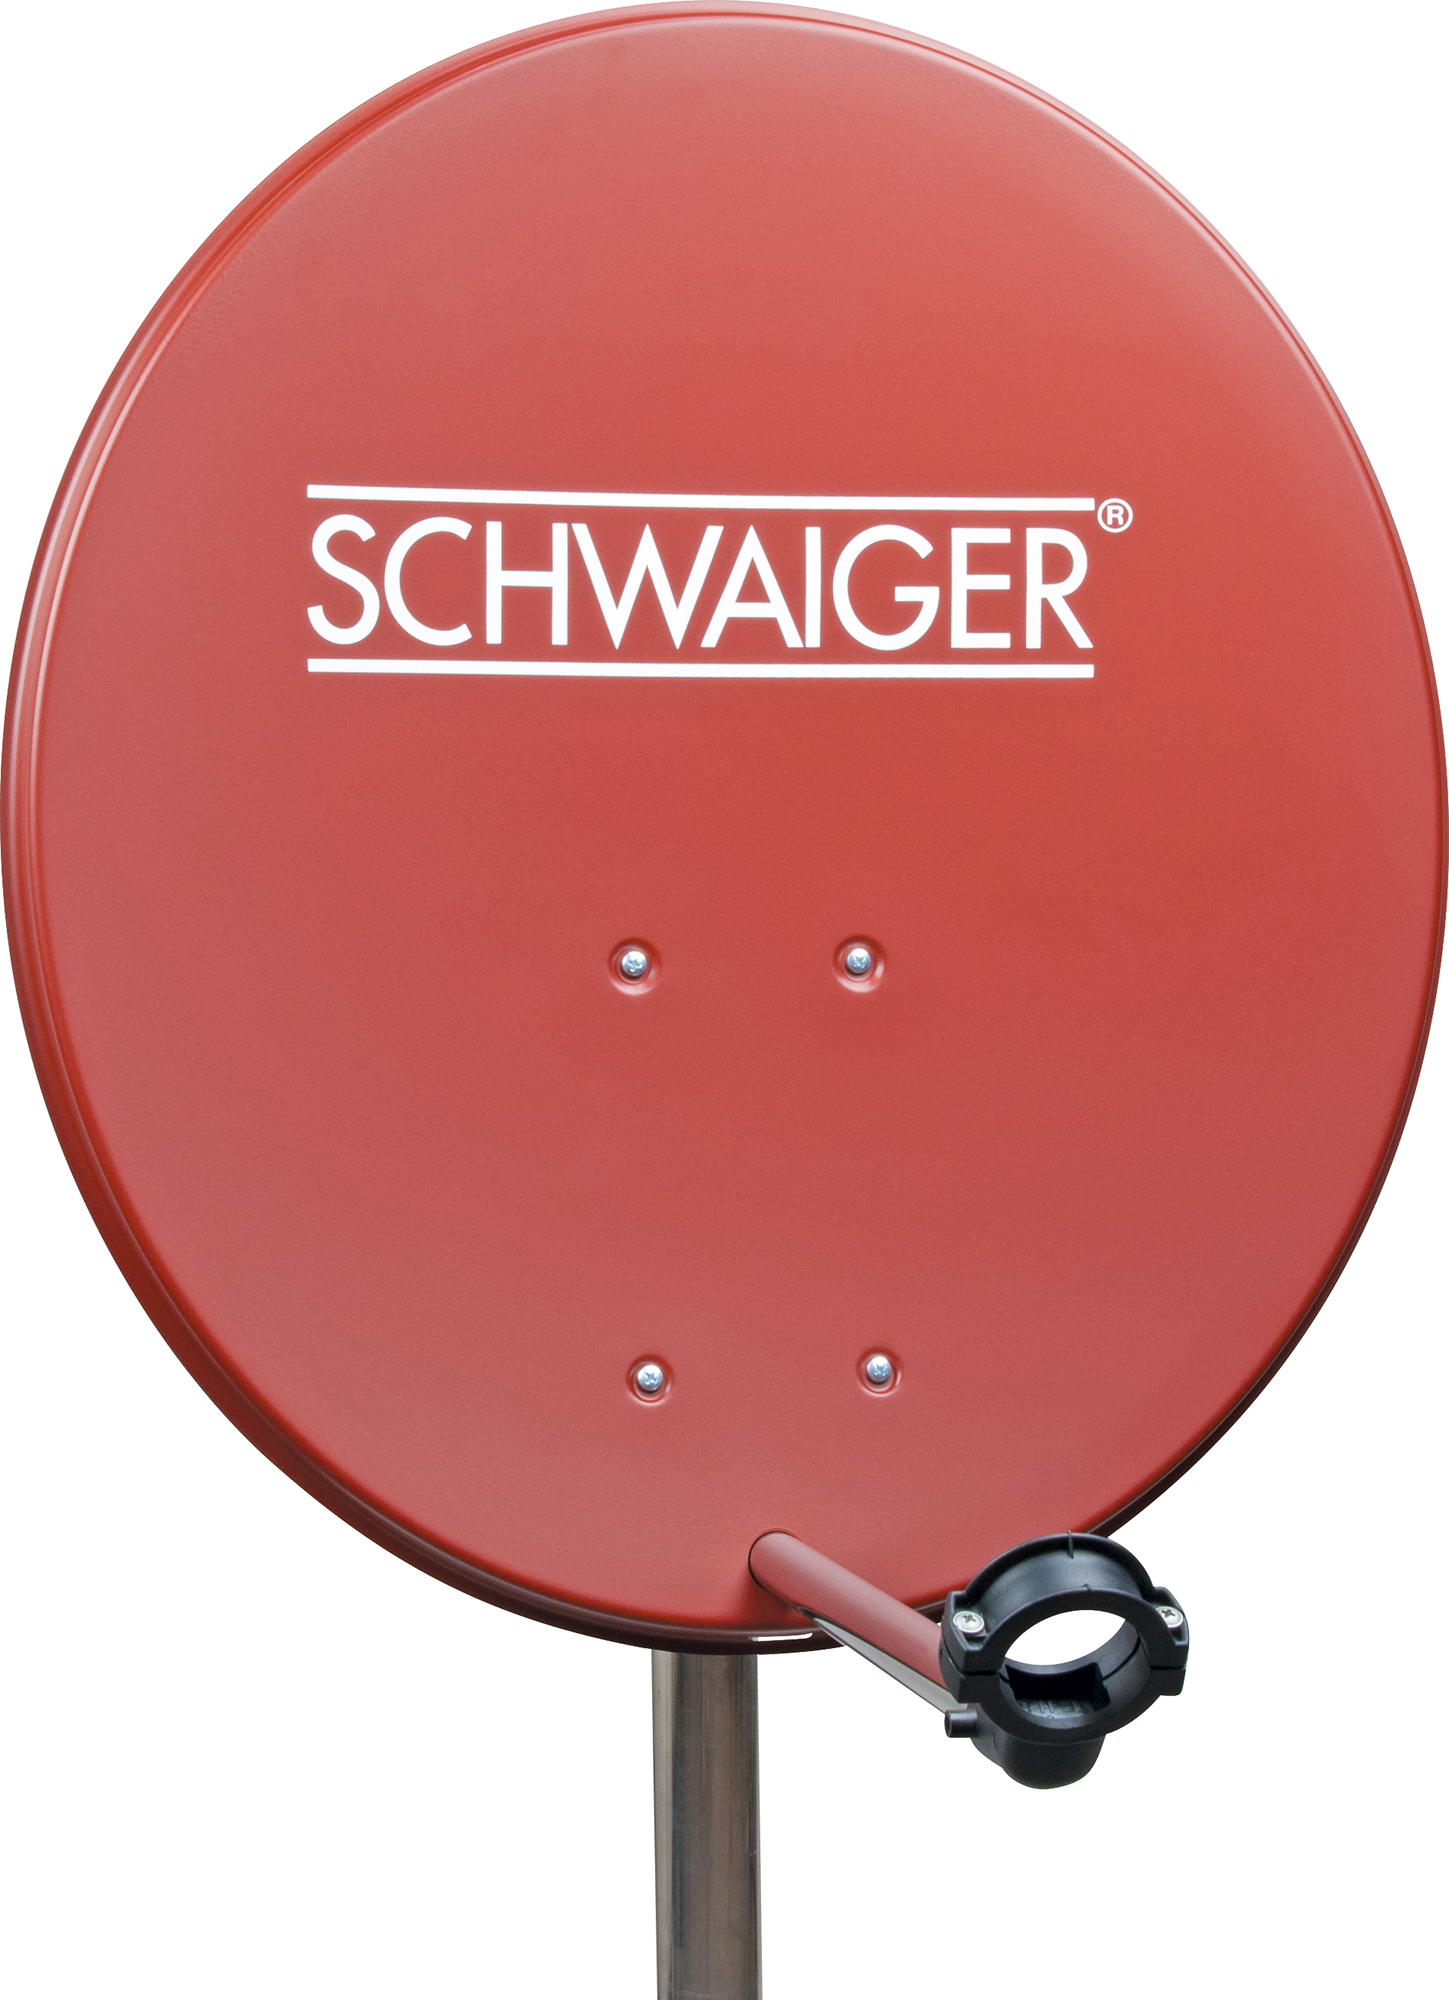 SCHWAIGER -719741- SAT Set, Single Satelliten LNB) Anlage cm, (55